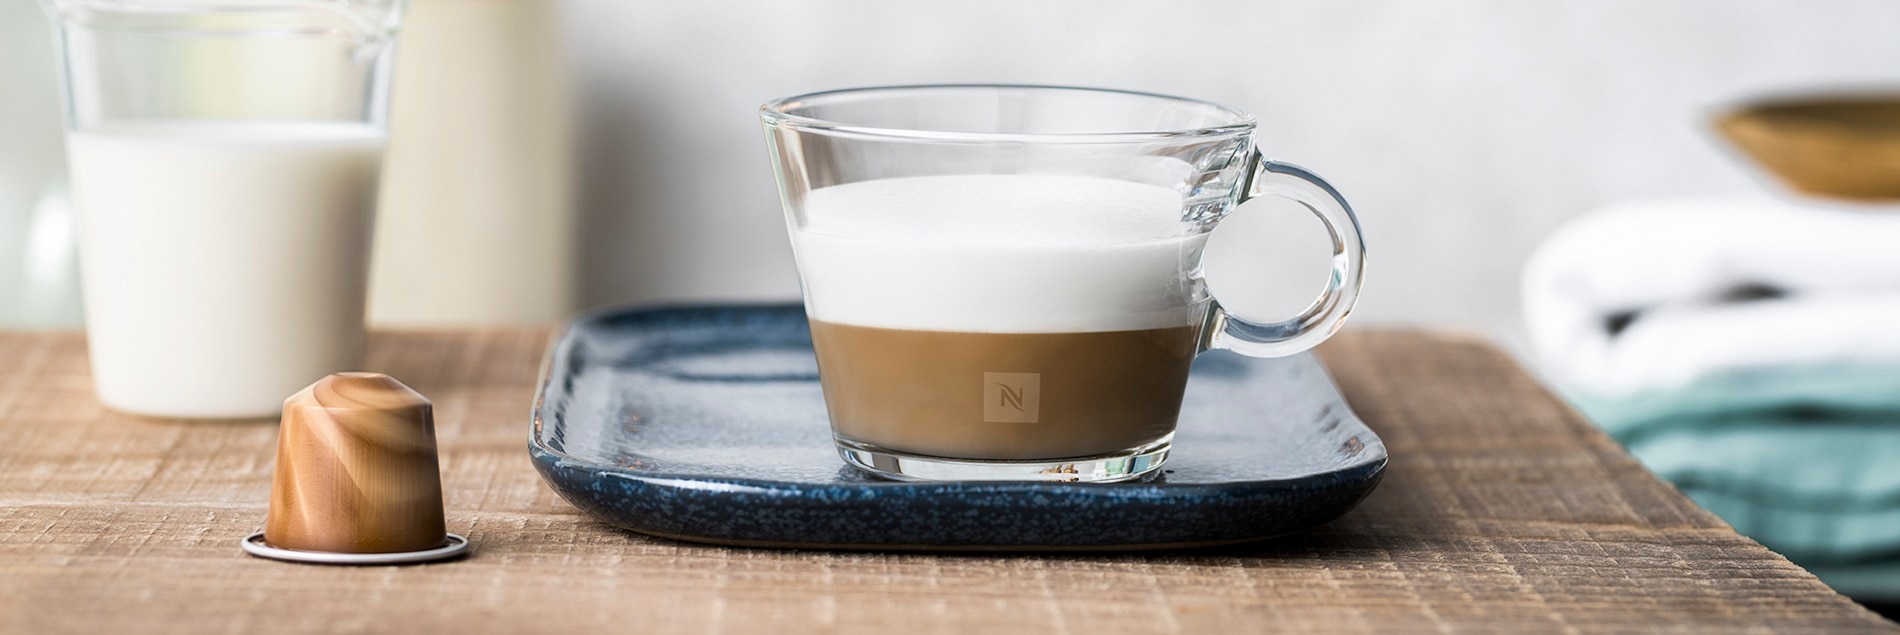 Double Cappuccino - Ricette Nespresso